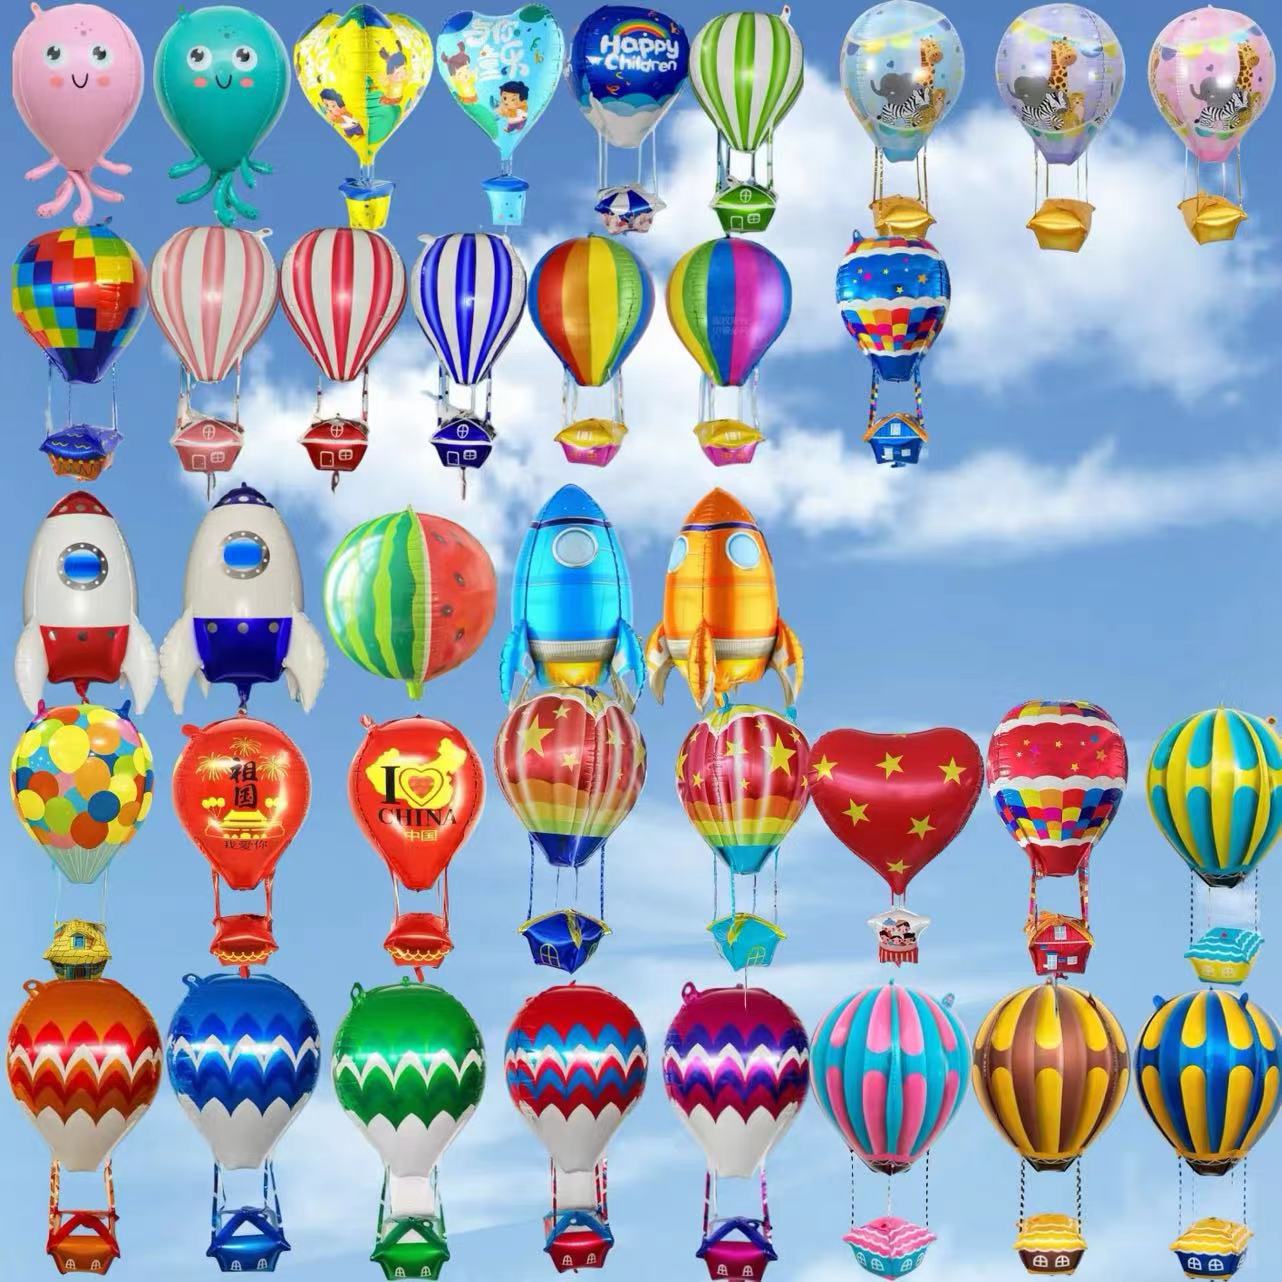 新款网红热气球火箭充气铝膜飞天立体热气球派对生日装饰地摊赠品